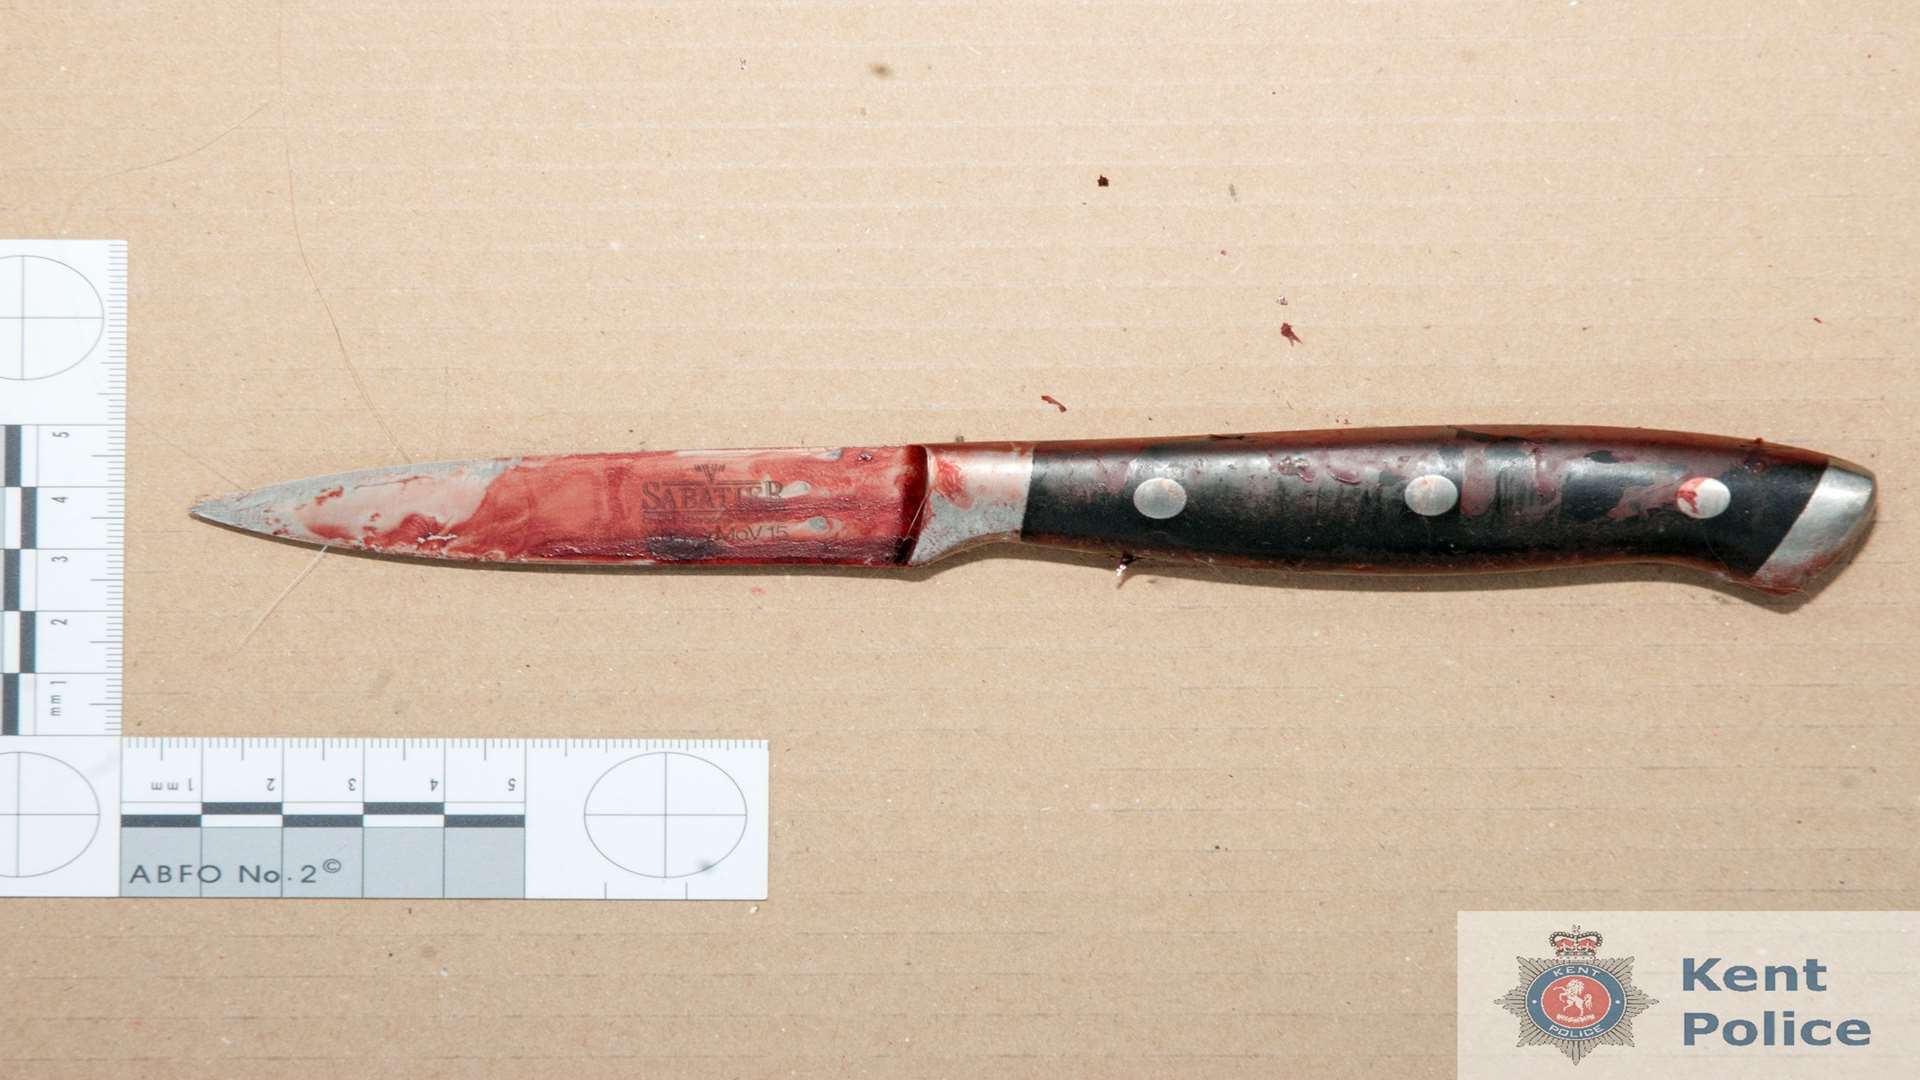 The knife used to kill Molly